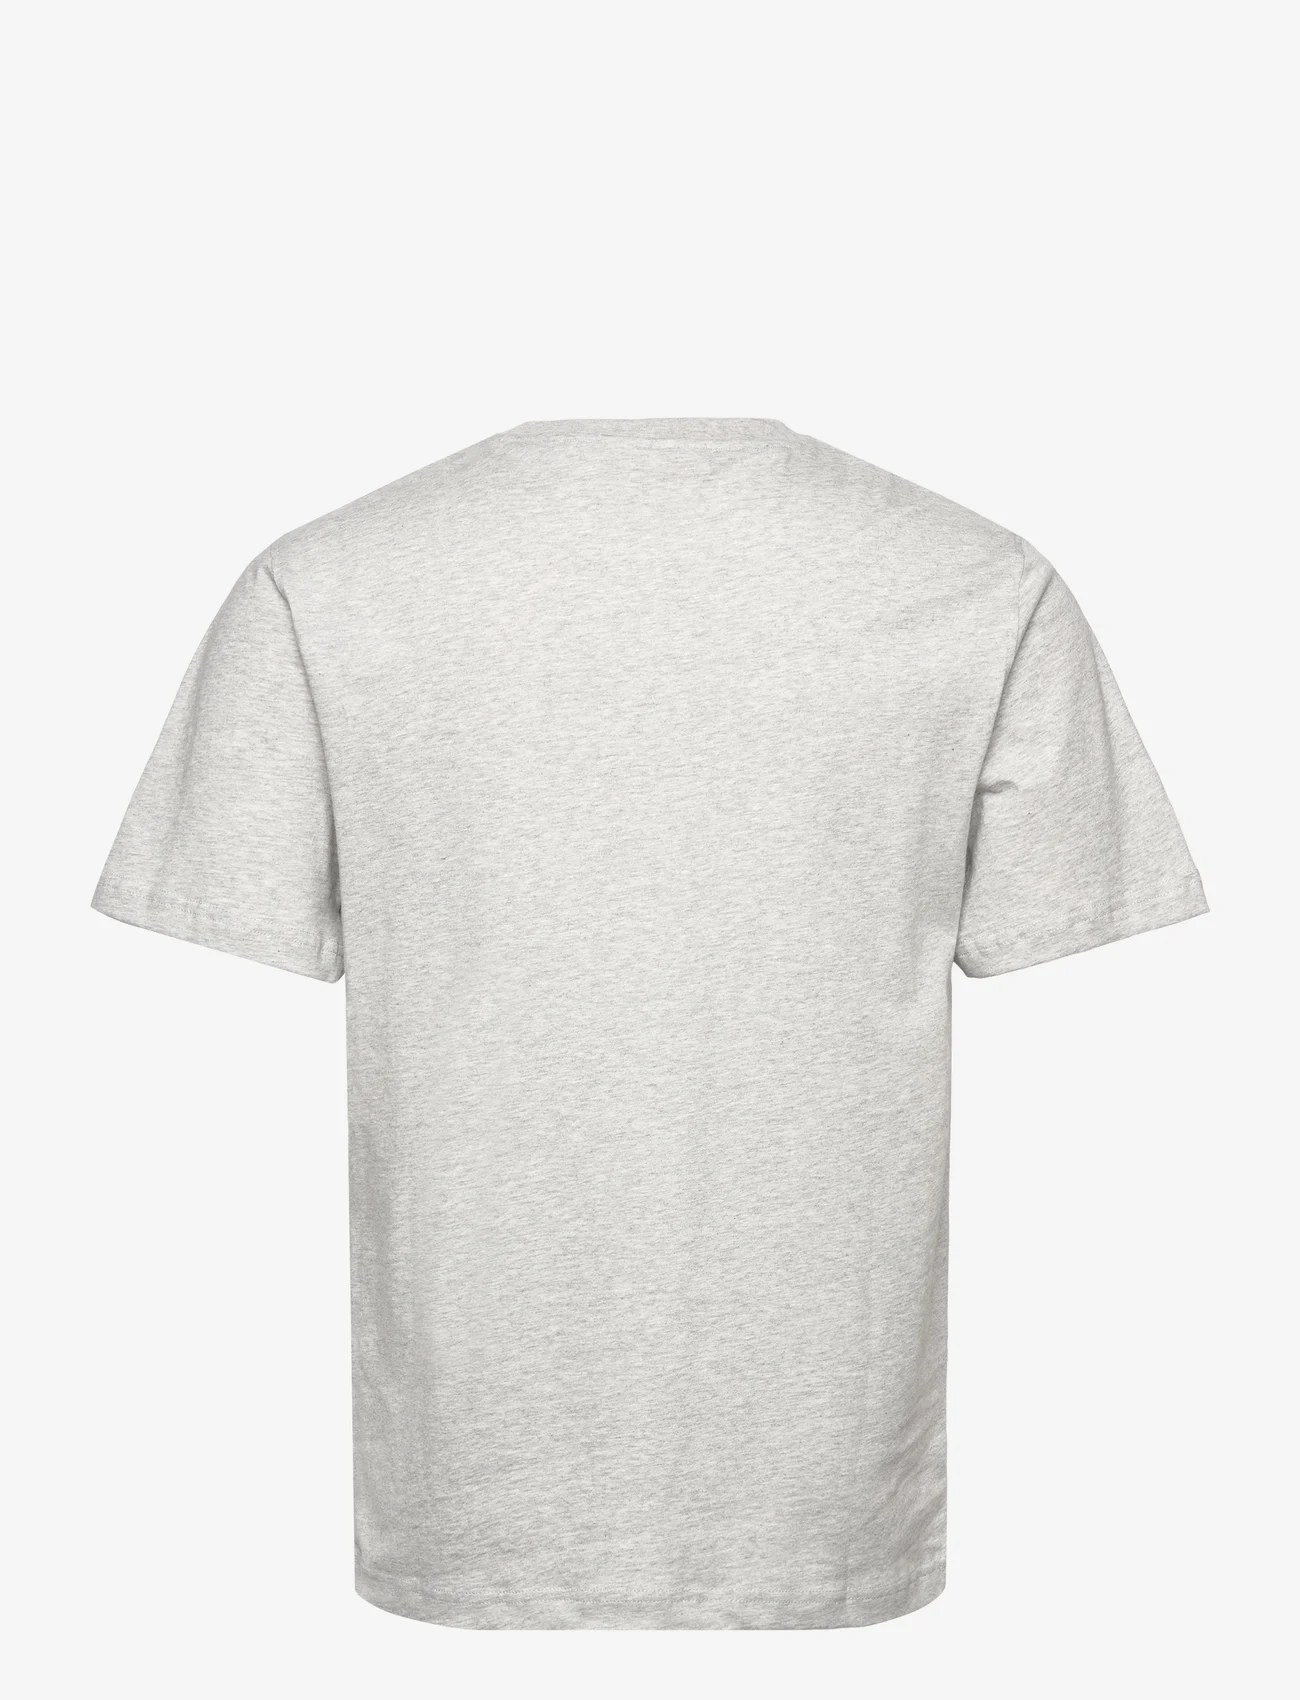 HAN Kjøbenhavn - Regular T-shirt Short sleeve - kurzärmelige - grey melange - 1